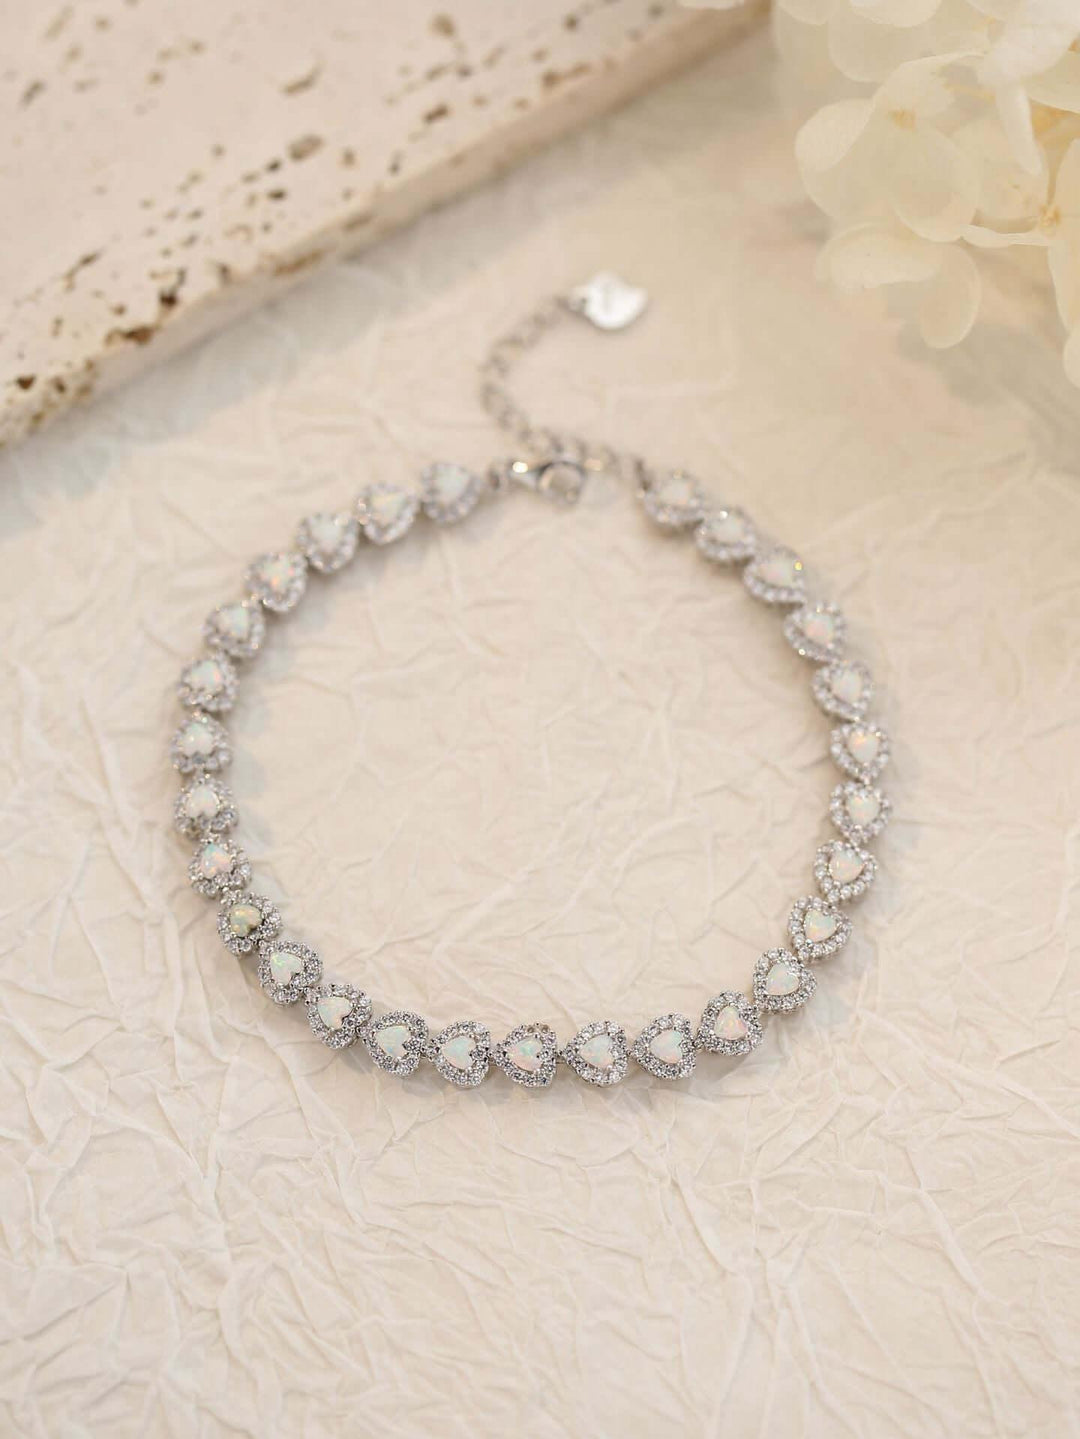 925 Sterling Silver Heart-shaped Opal Bracelet - Lox Vault